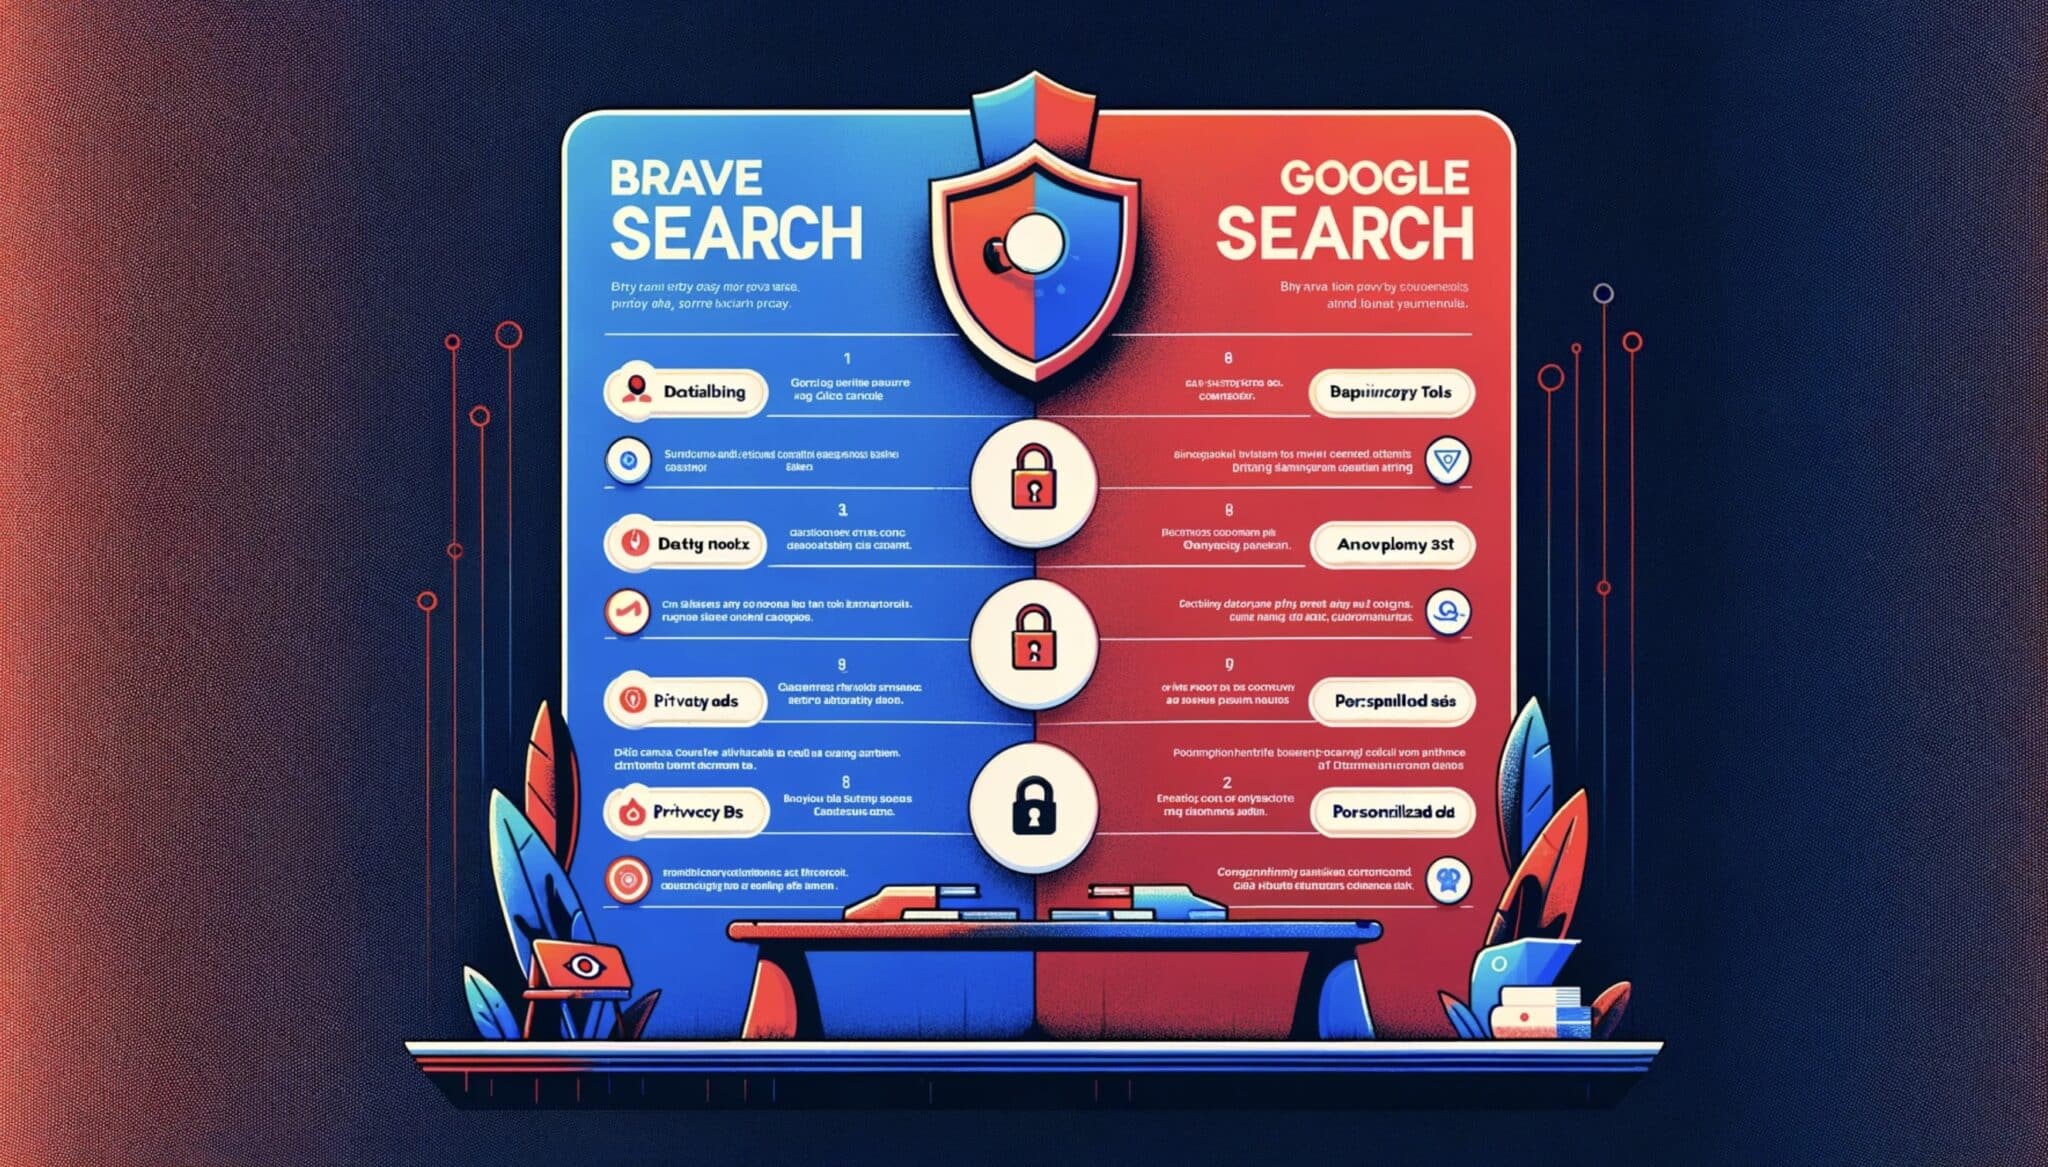 Comment Brave Search se compare-t-il à Google en matière de protection des données personnelles ?